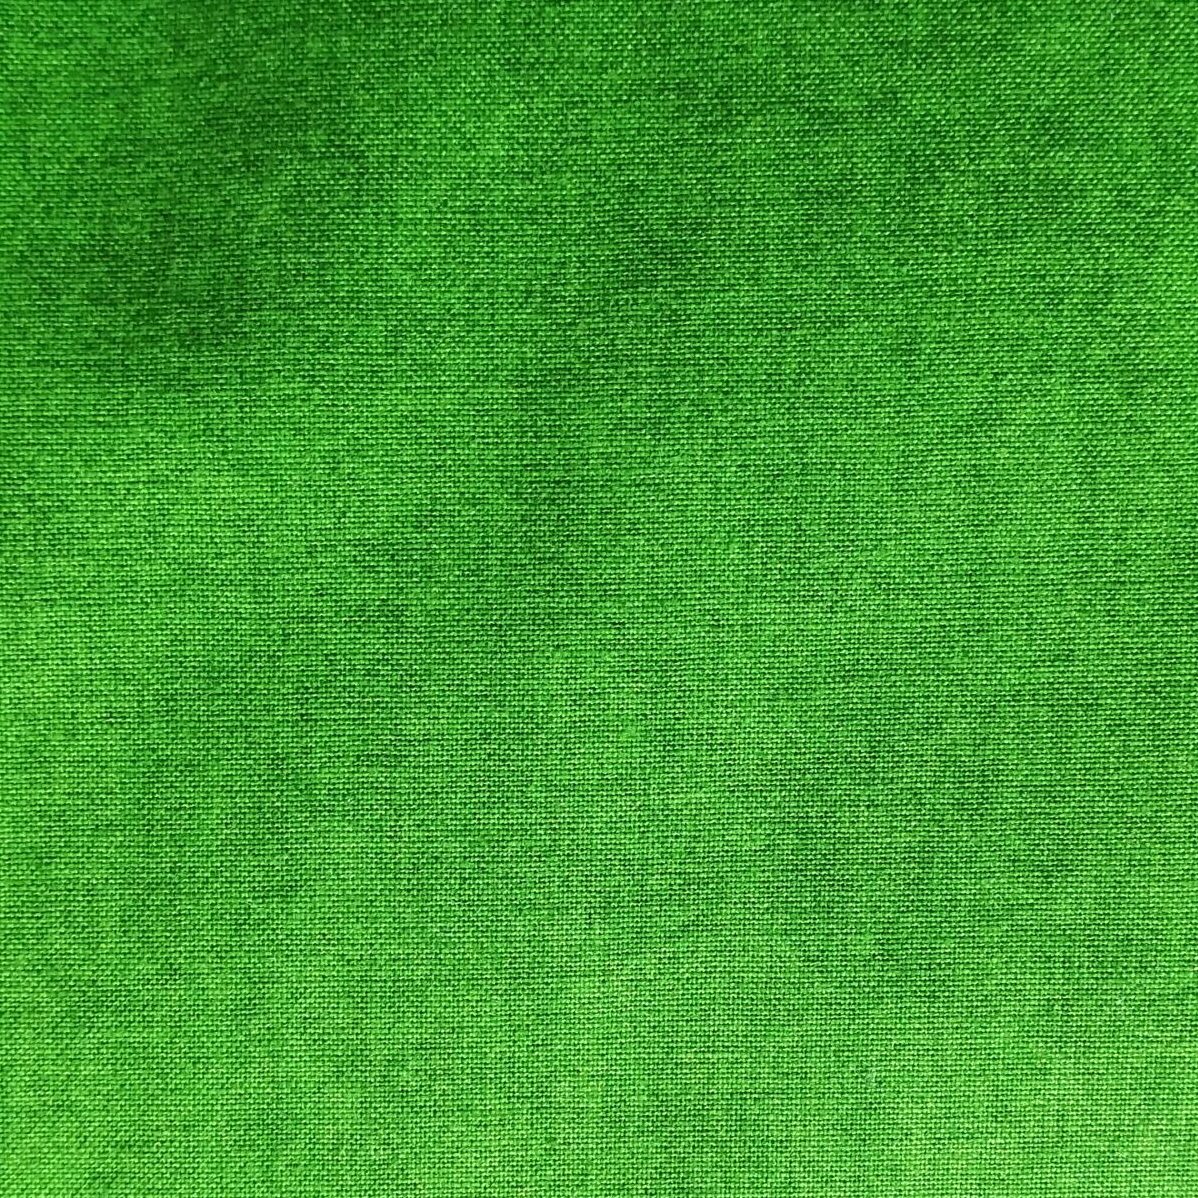 tela verde jaspeada